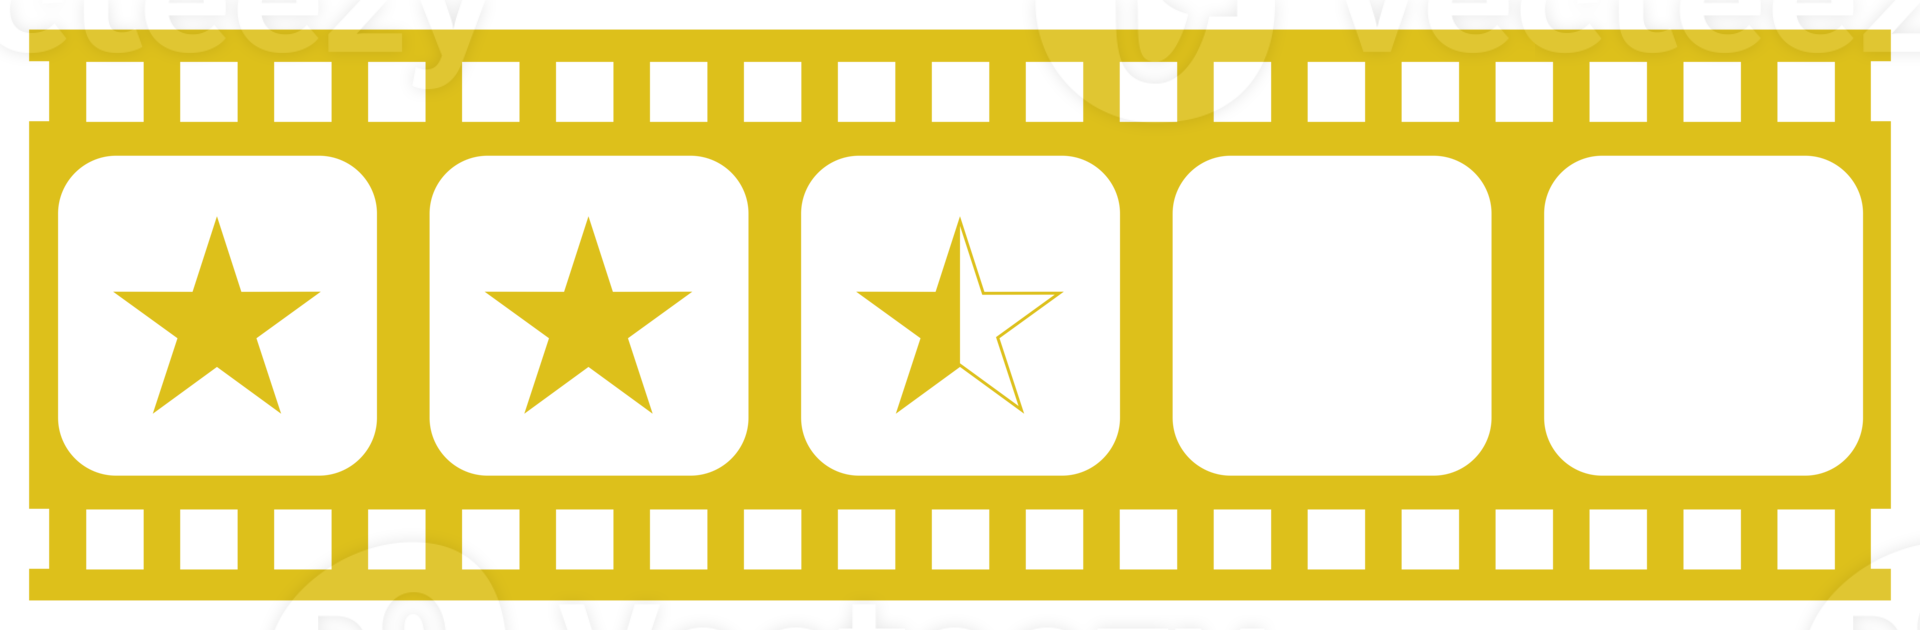 zichtbaar van de vijf 5 ster teken in de film streep silhouet. ster beoordeling icoon symbool voor film of film opnieuw bekijken, pictogram, appjes, website of grafisch ontwerp element. beoordeling 2,5 ster. formaat PNG